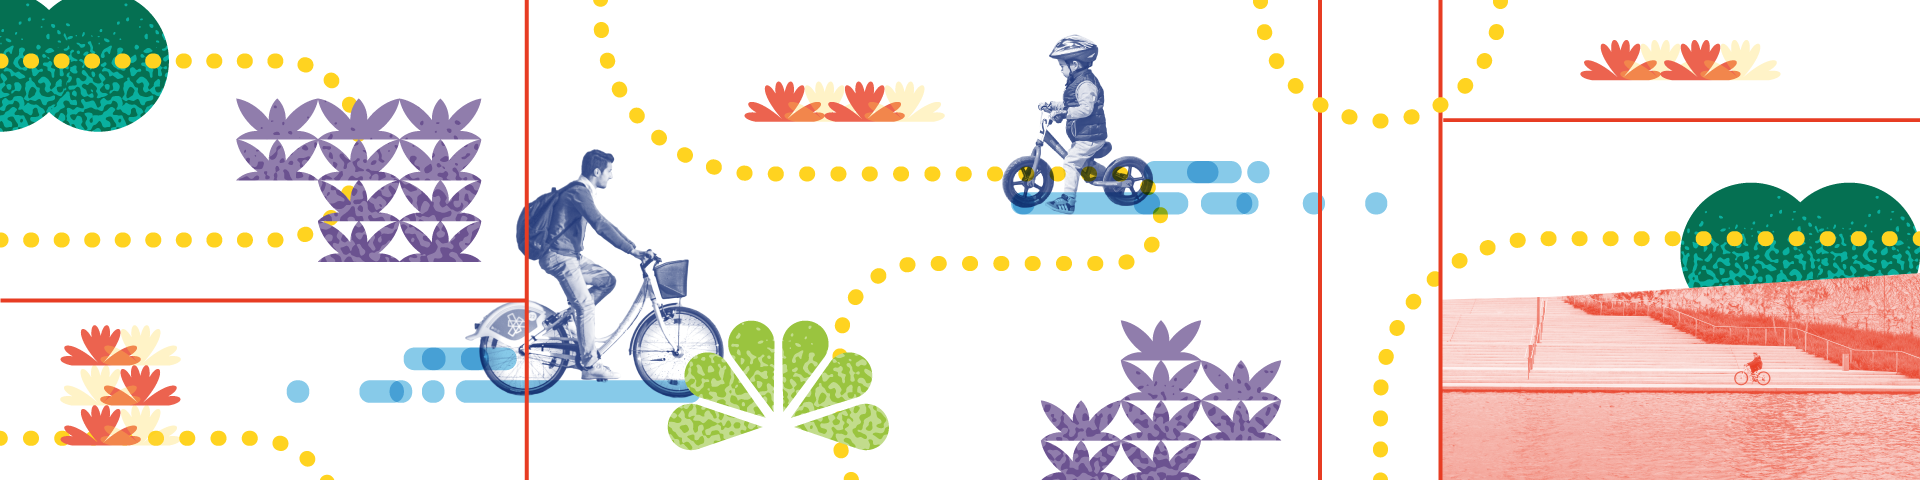 εικαστικό με παιδί που ποδηλατεί φορώντας κράνος και διάφορα πολύ χρωμα φυτά